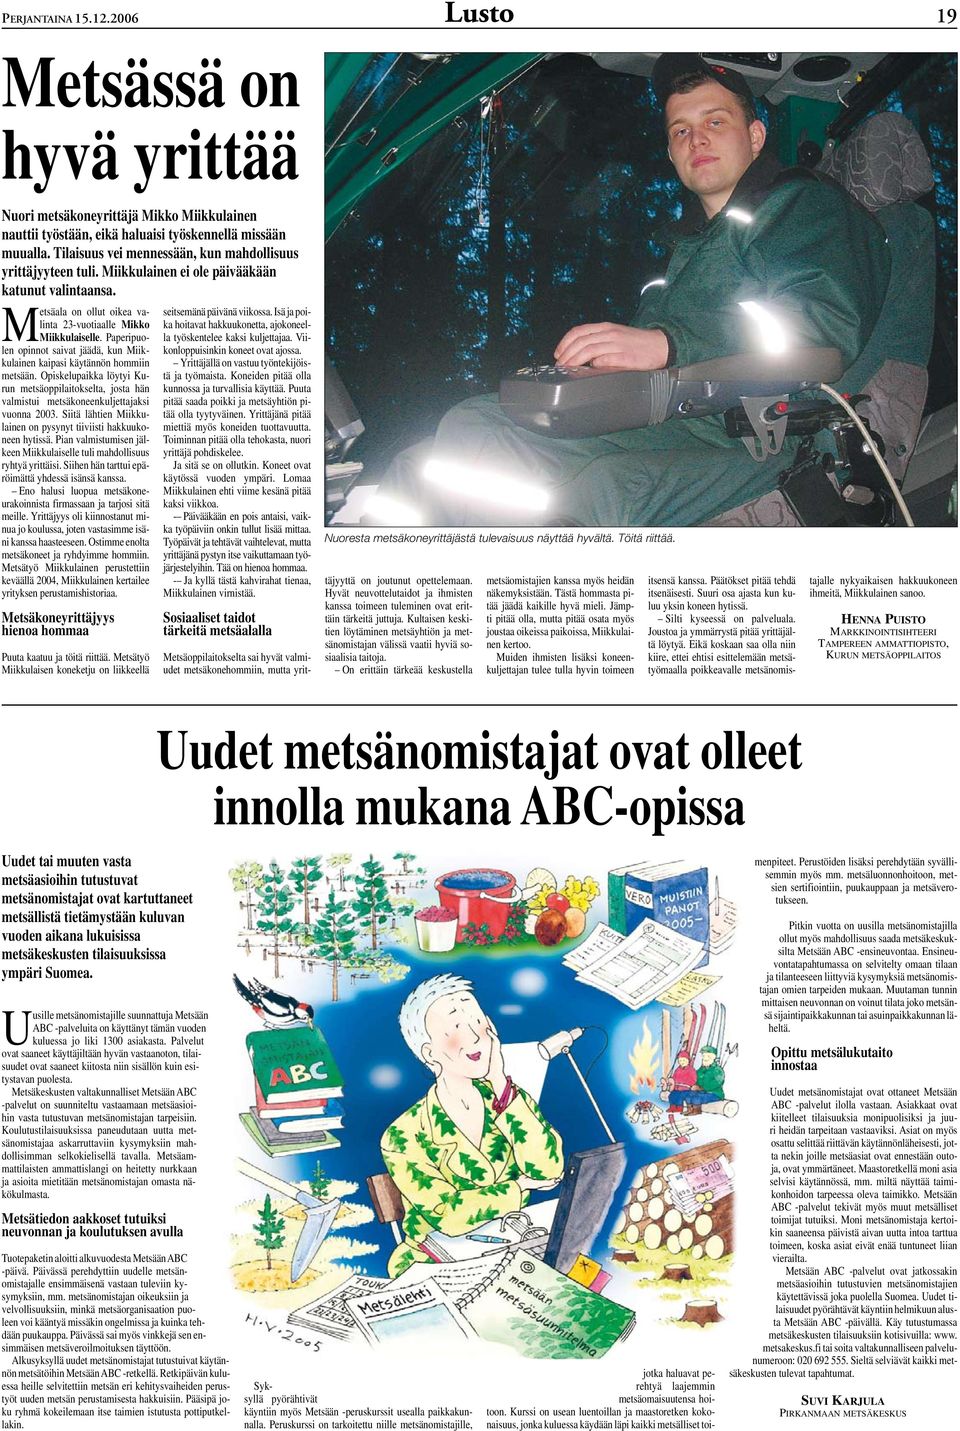 Paperipuolen opinnot saivat jäädä, kun Miikkulainen kaipasi käytännön hommiin metsään. Opiskelupaikka löytyi Kurun metsäoppilaitokselta, josta hän valmistui metsäkoneenkuljettajaksi vuonna 2003.